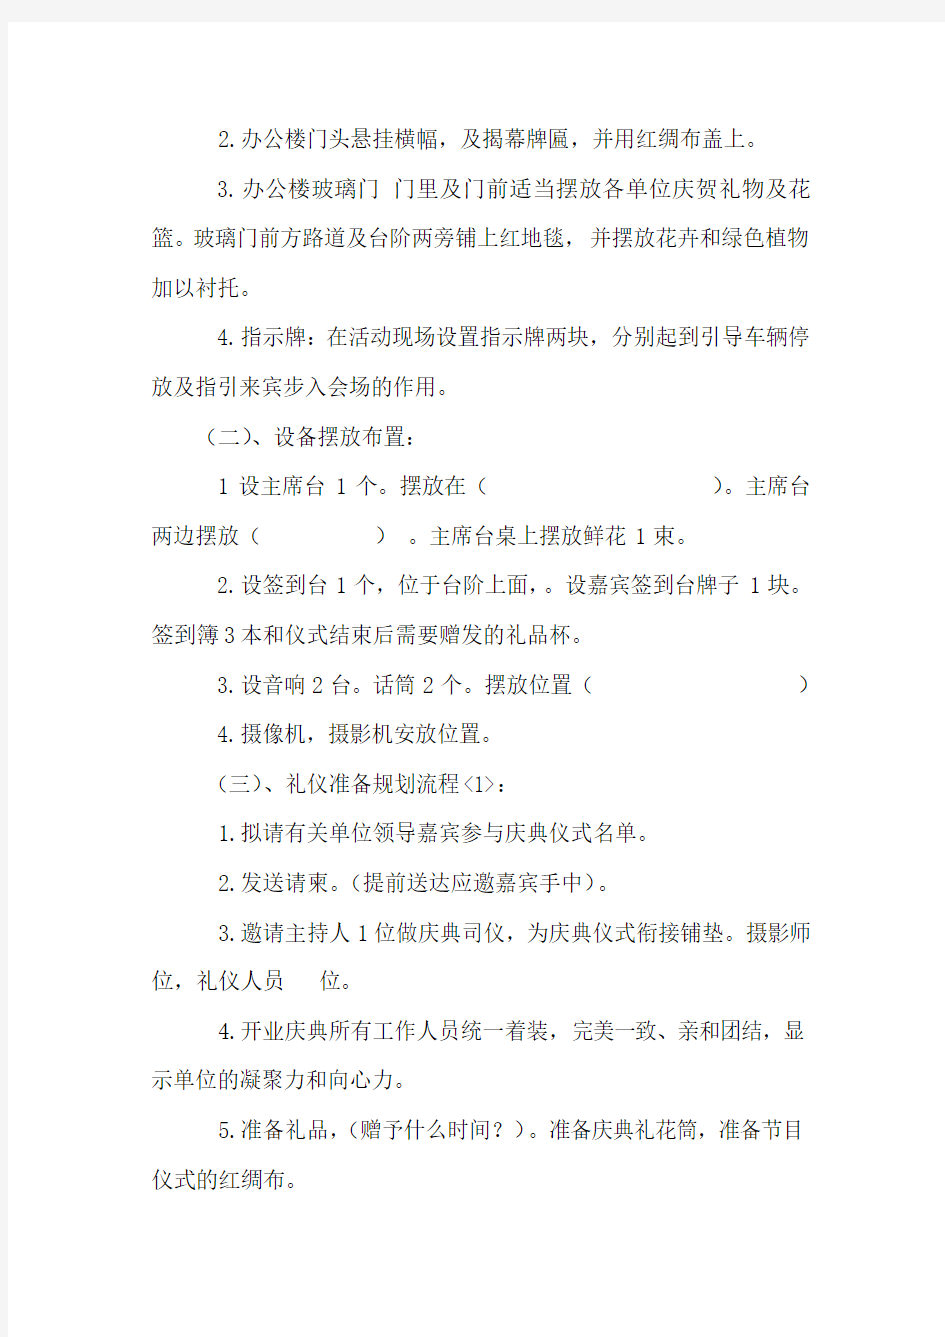 湖南省第四工程有限公司上海分公司乔迁庆典策划方案